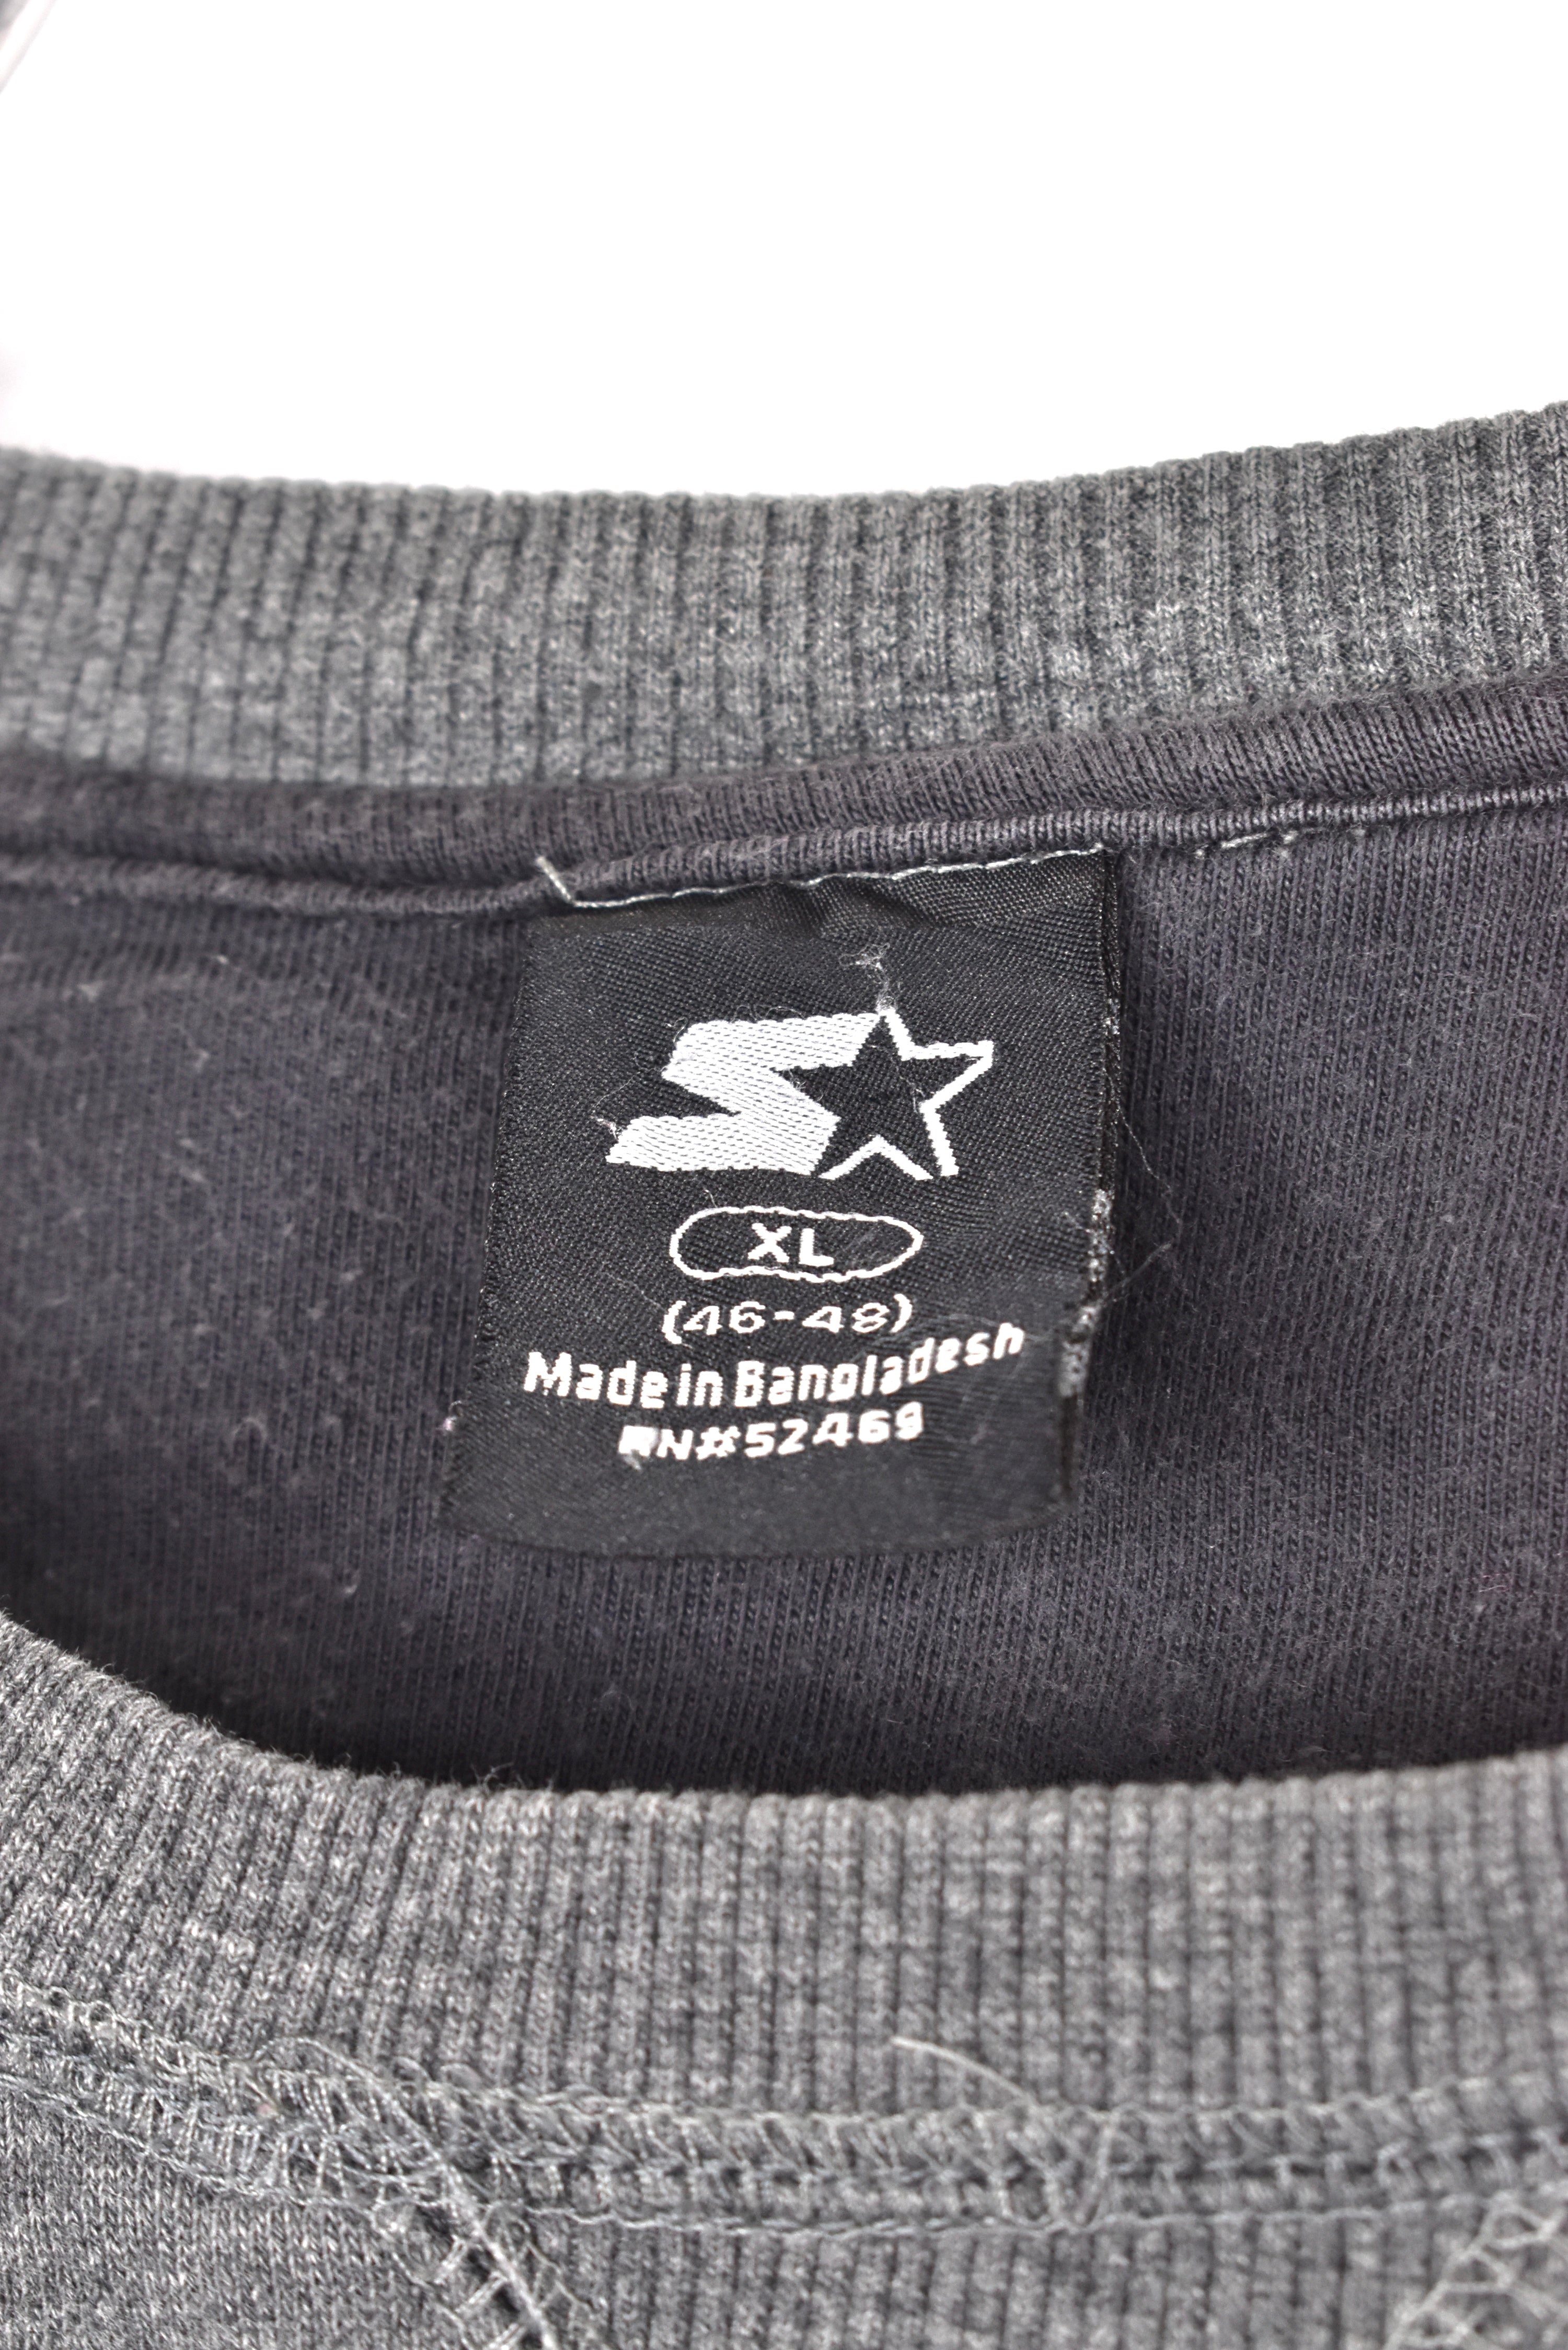 Vintage Starter sweatshirt, grey embroidered crewneck - AU XL STARTER